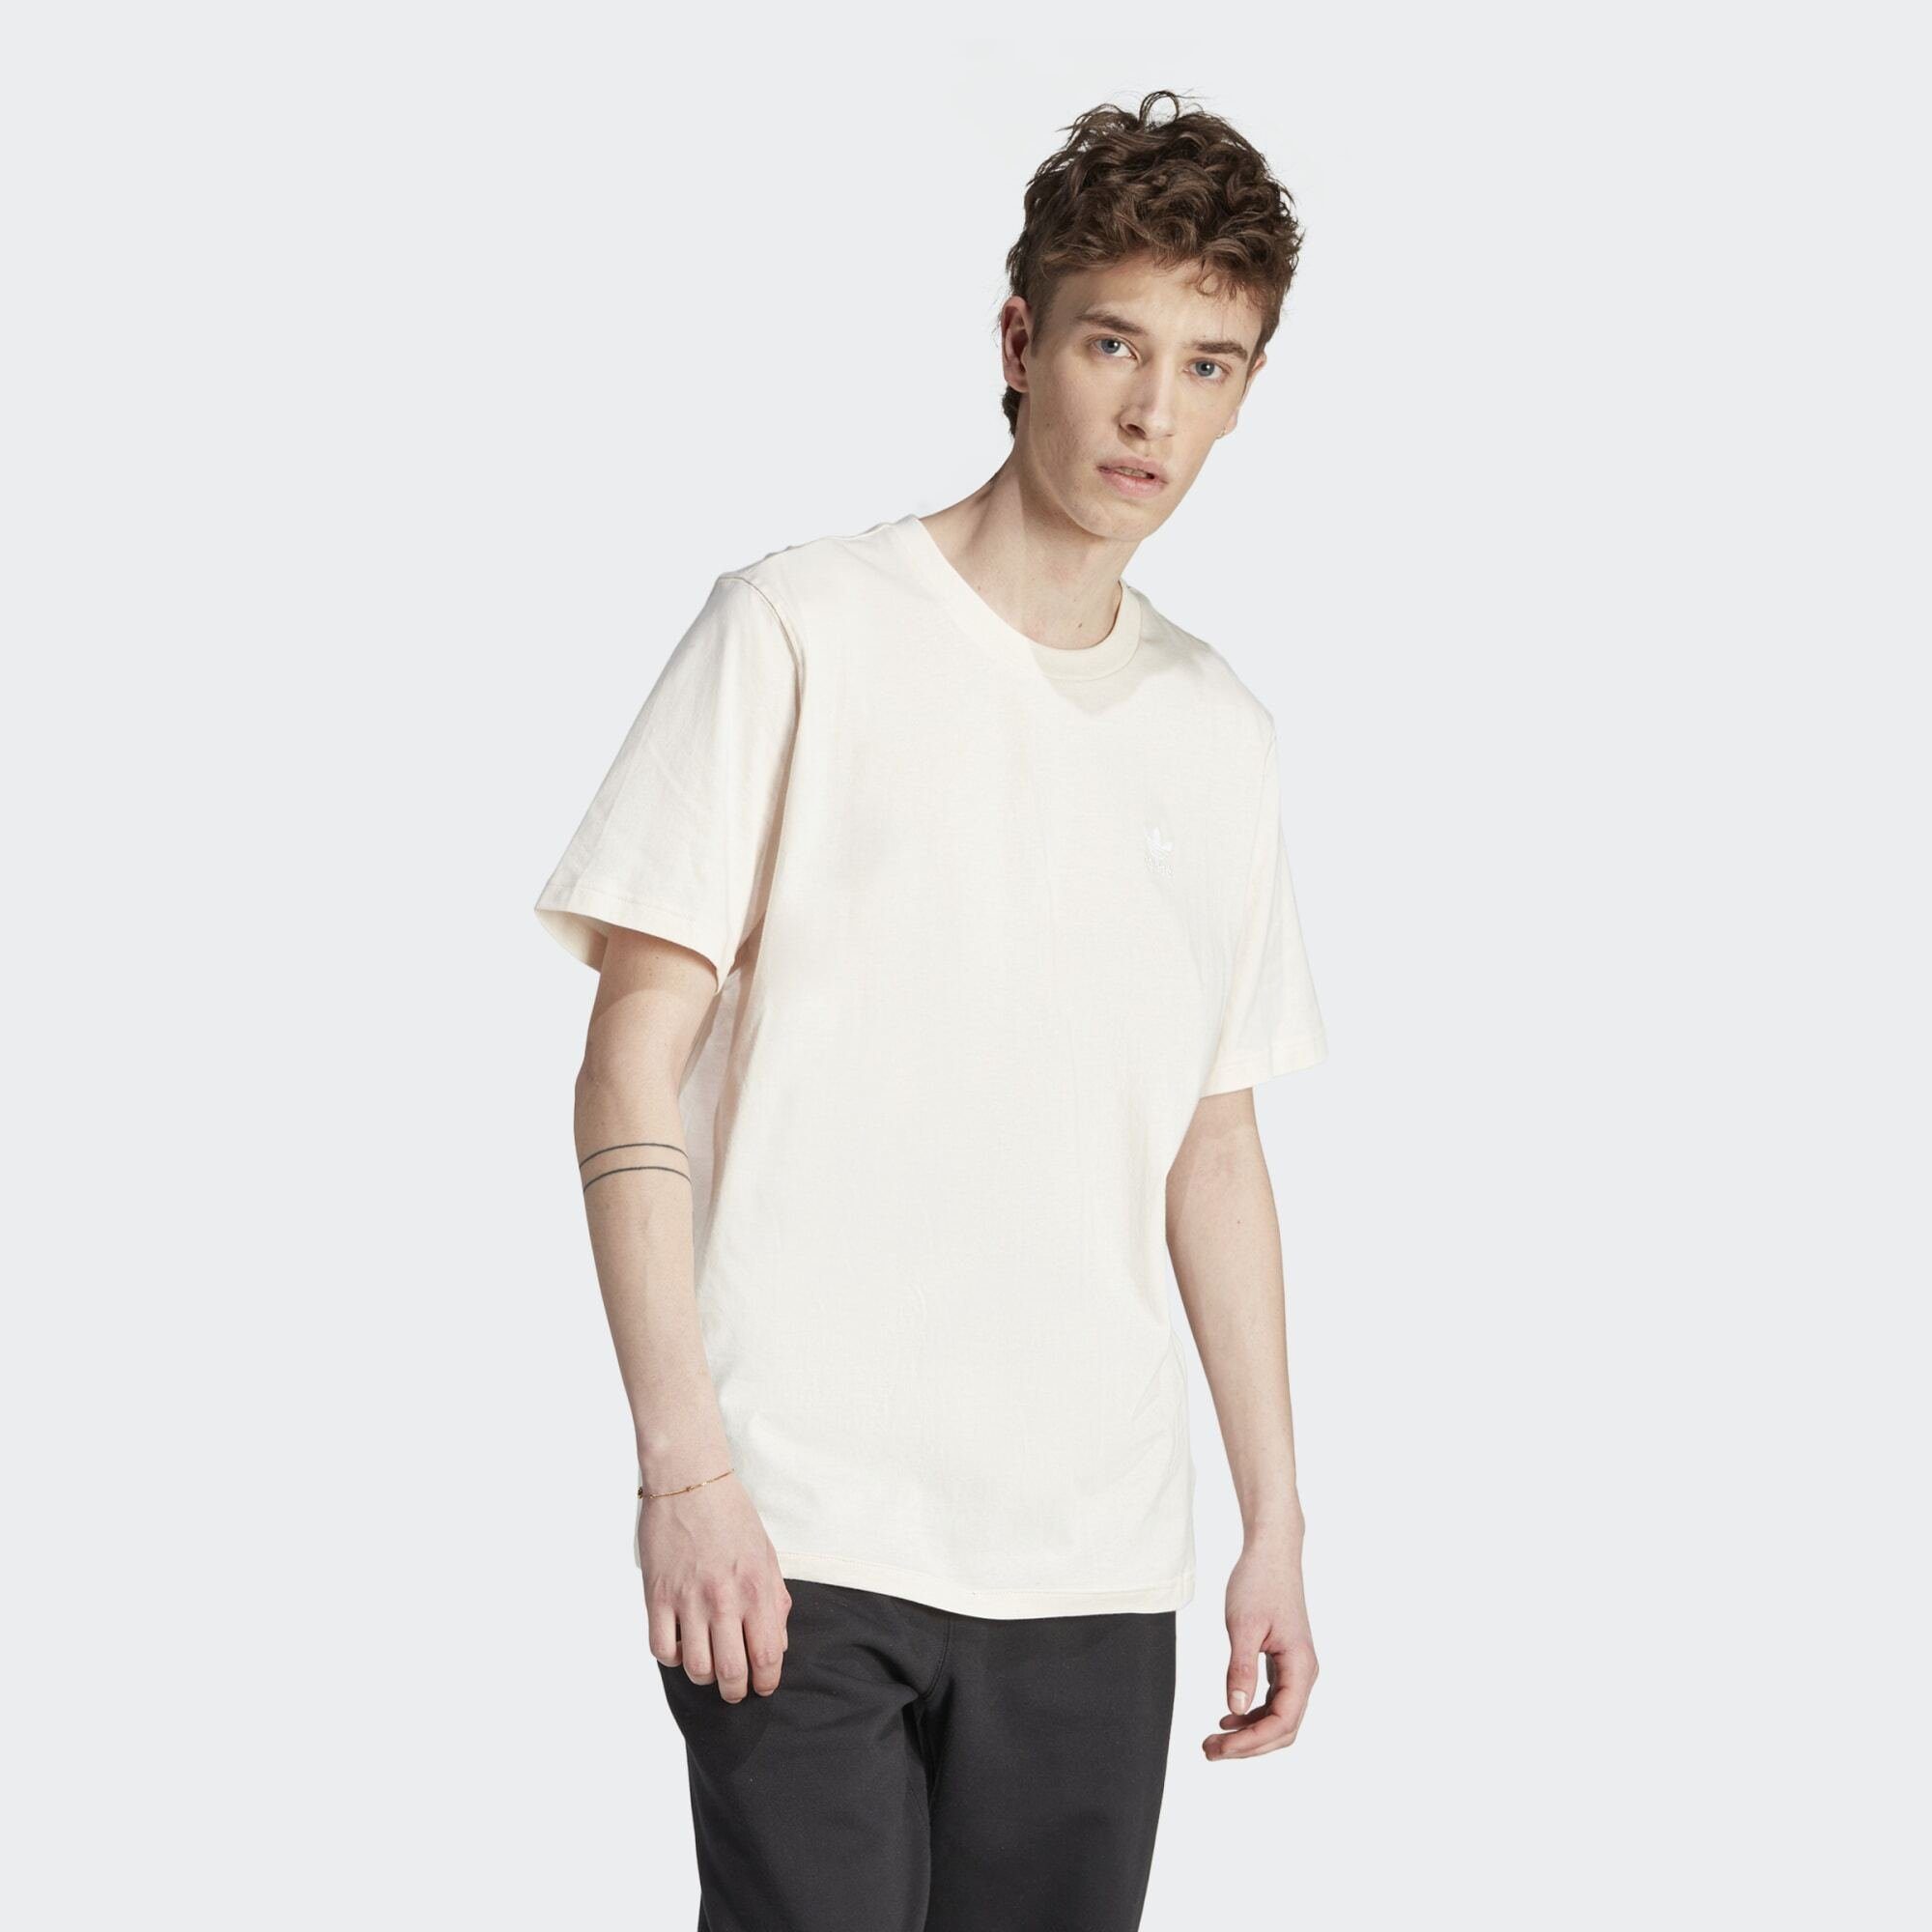 ESSENTIALS Wonder T-SHIRT T-Shirt adidas Originals TREFOIL White